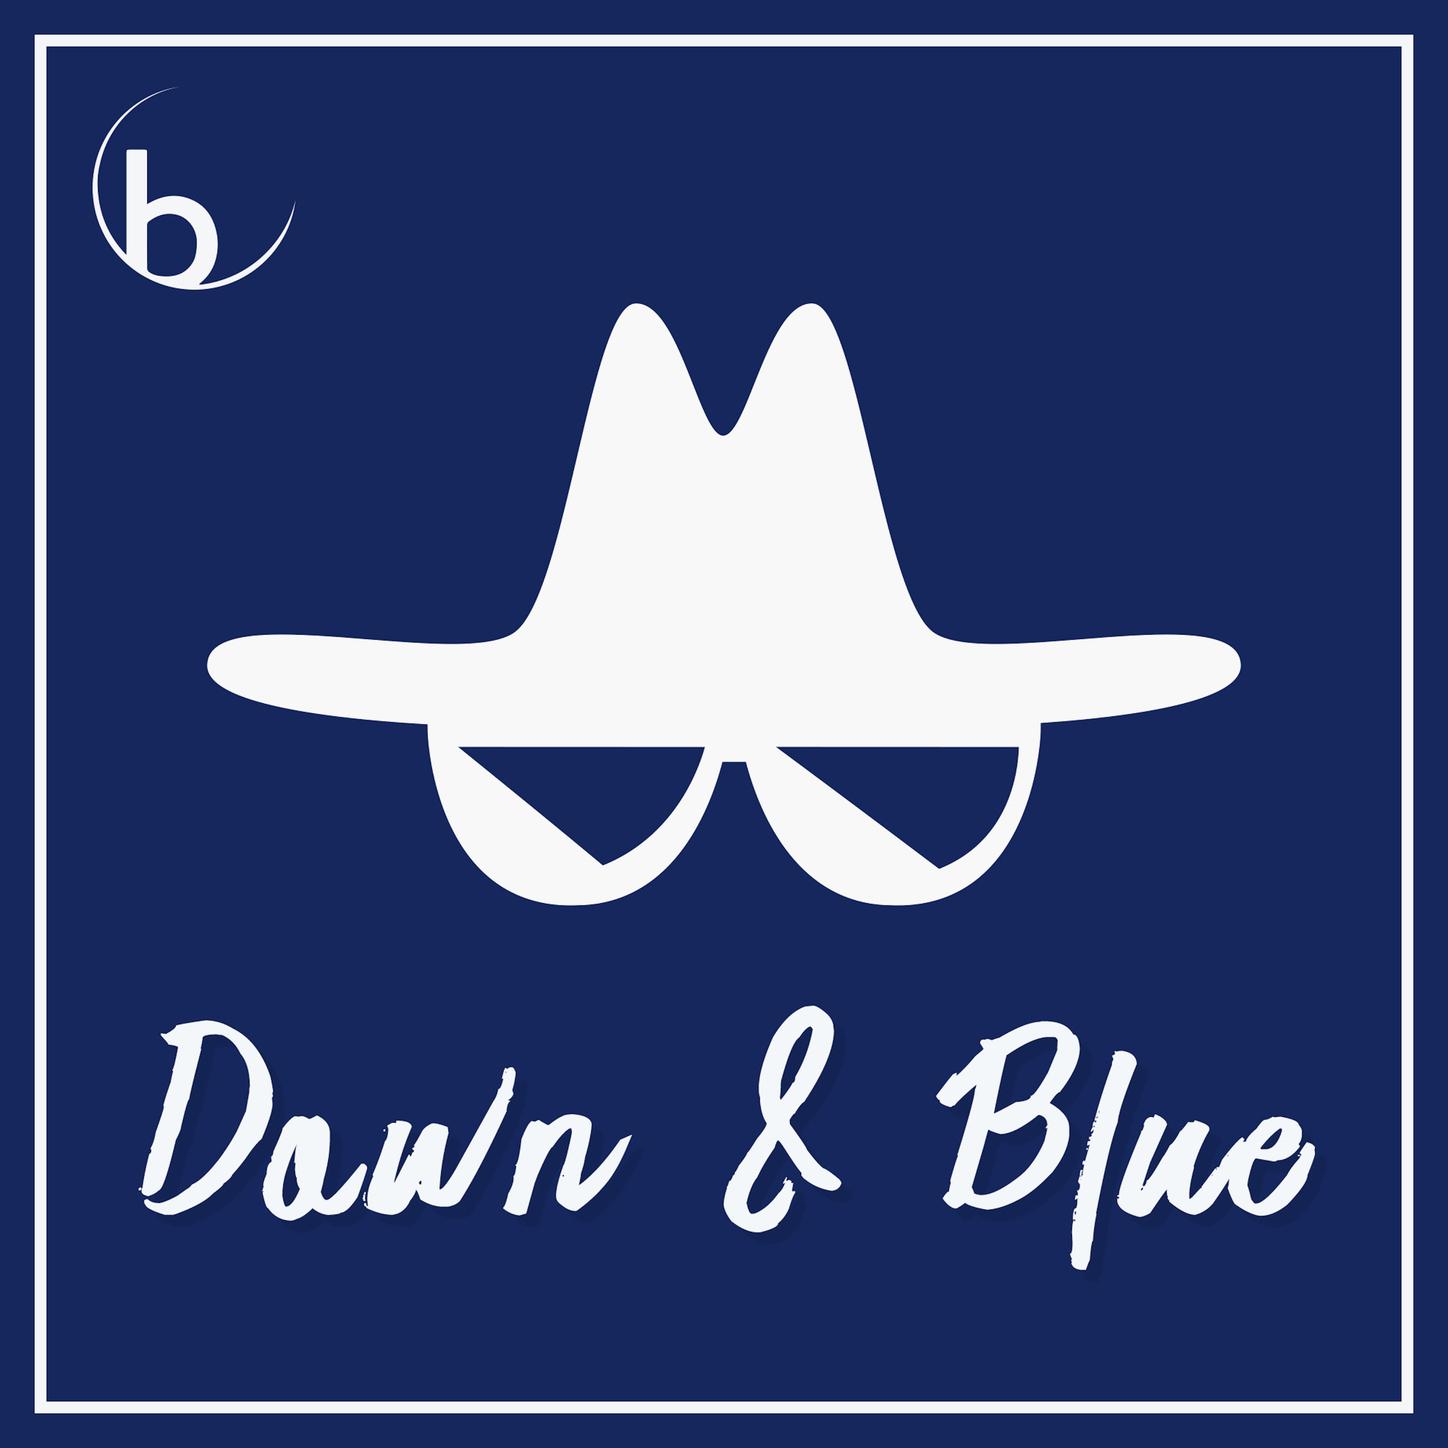 Down & Blue